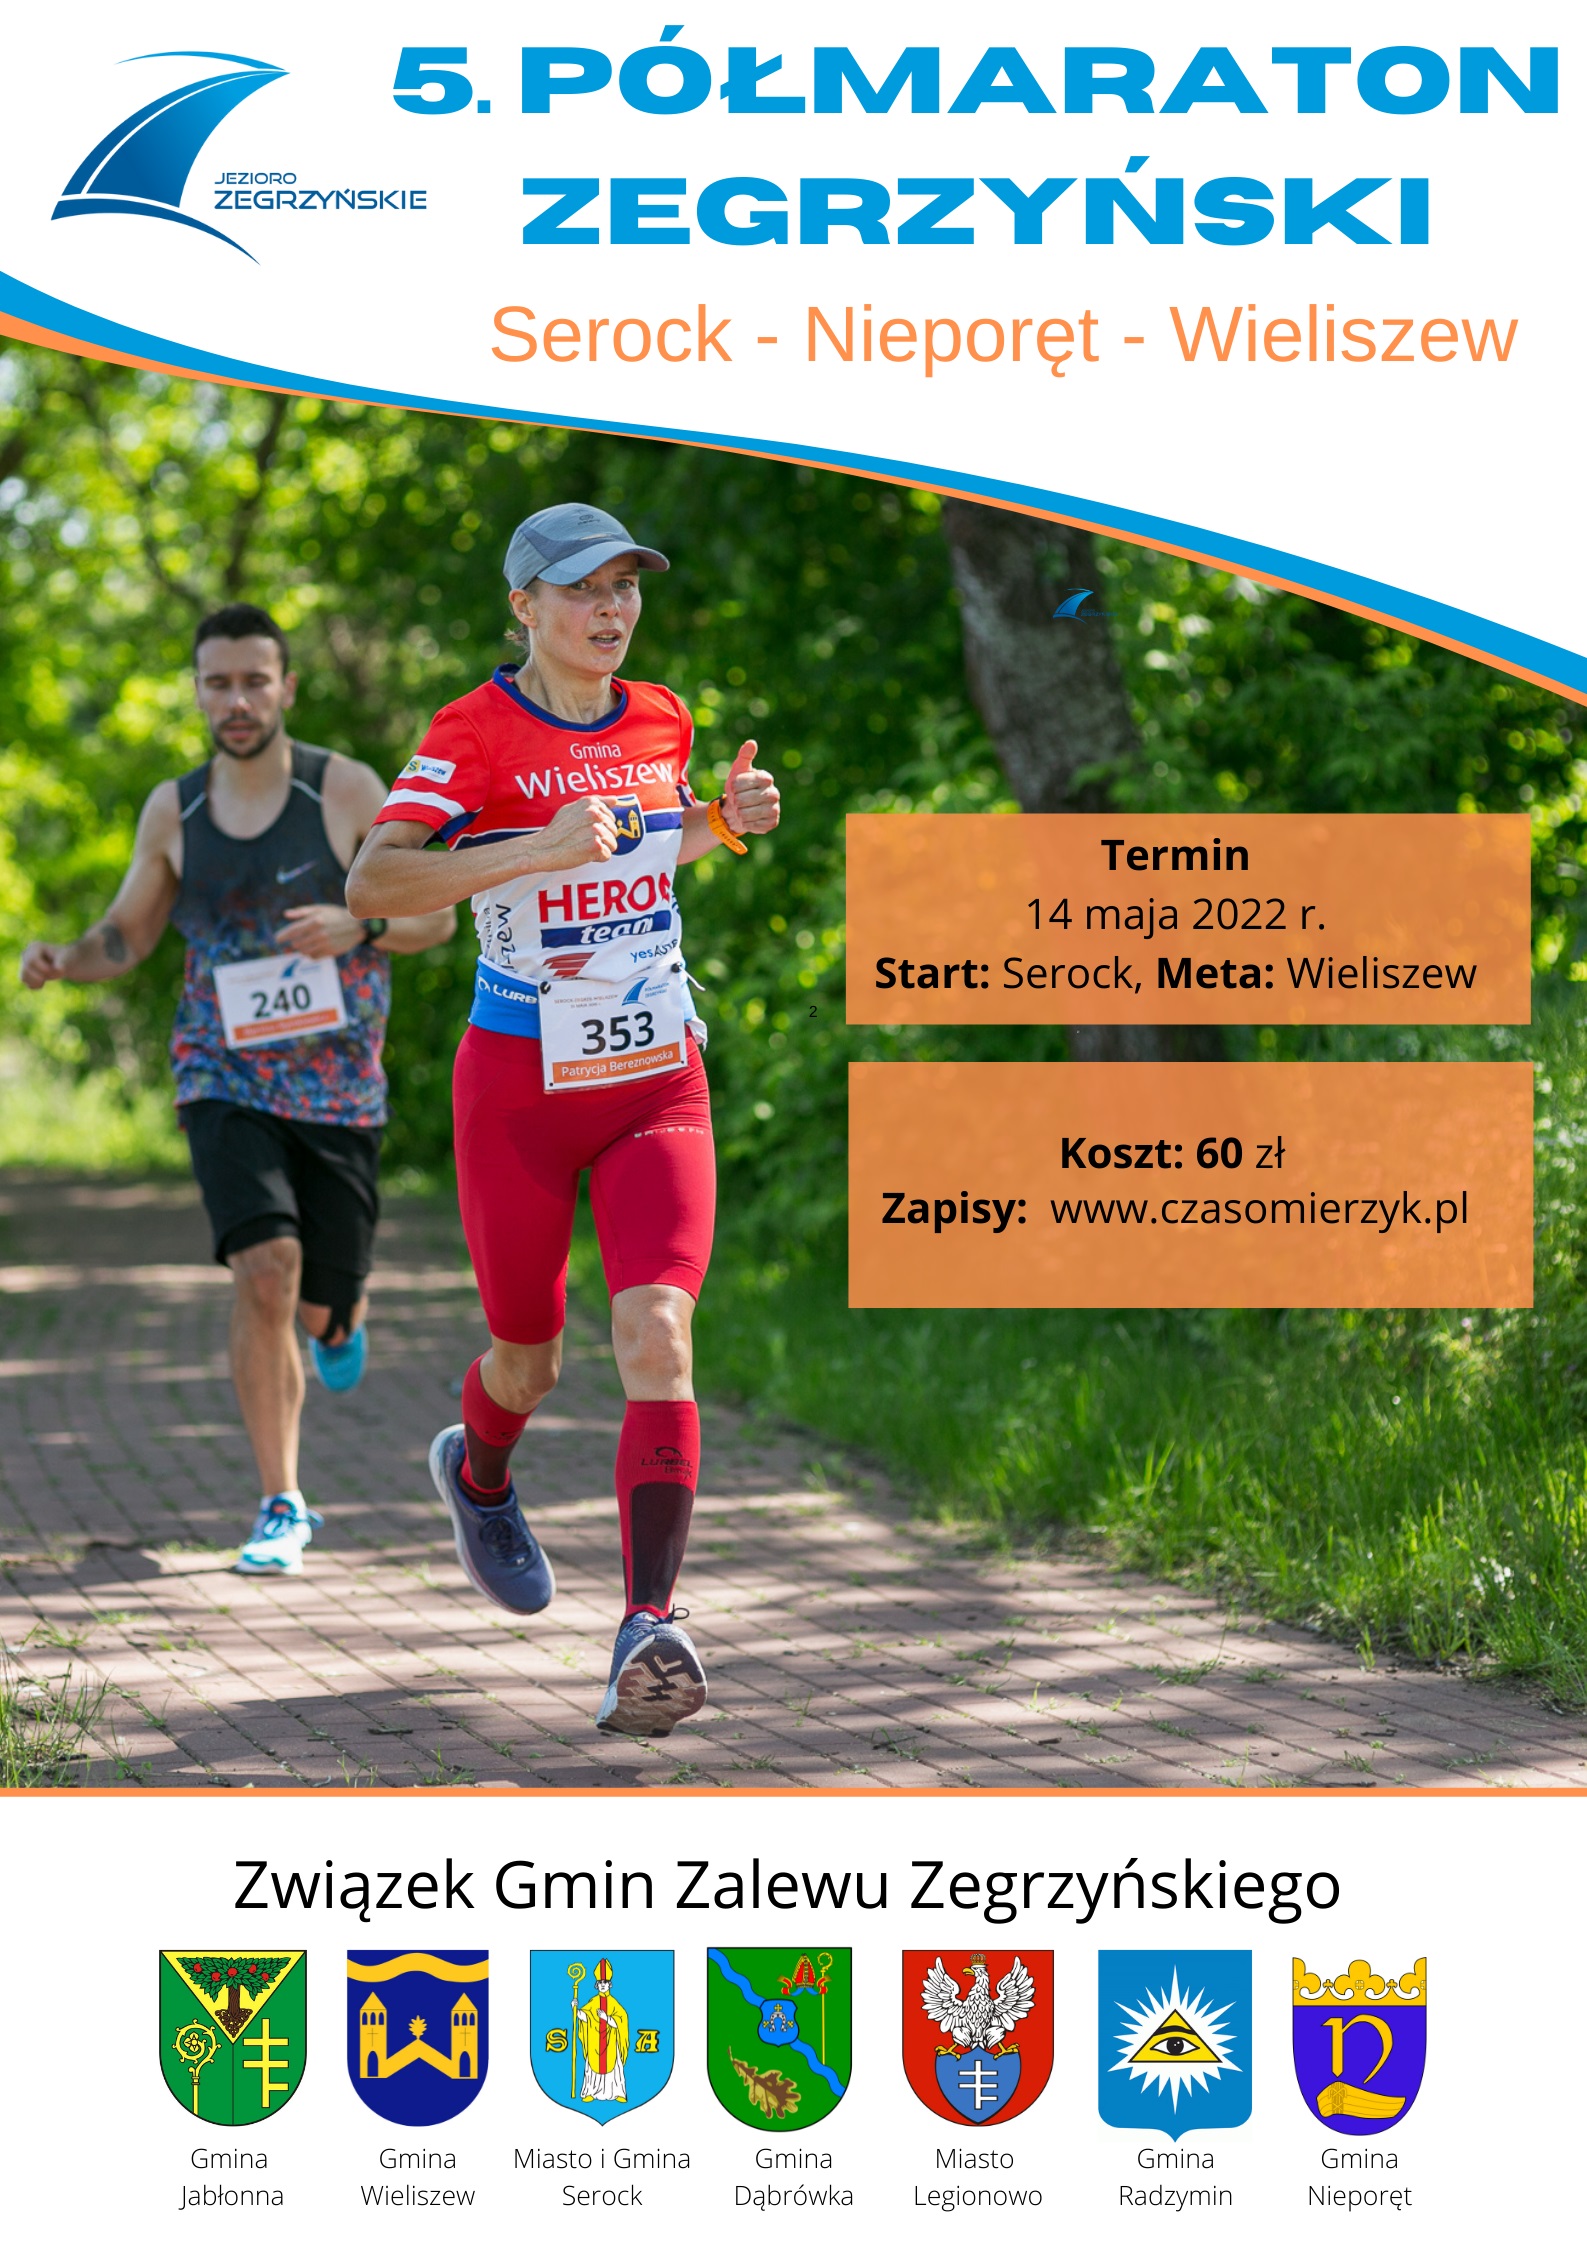 Plakat informacyjny o 5. Półmaratonie Zegrzyńskim